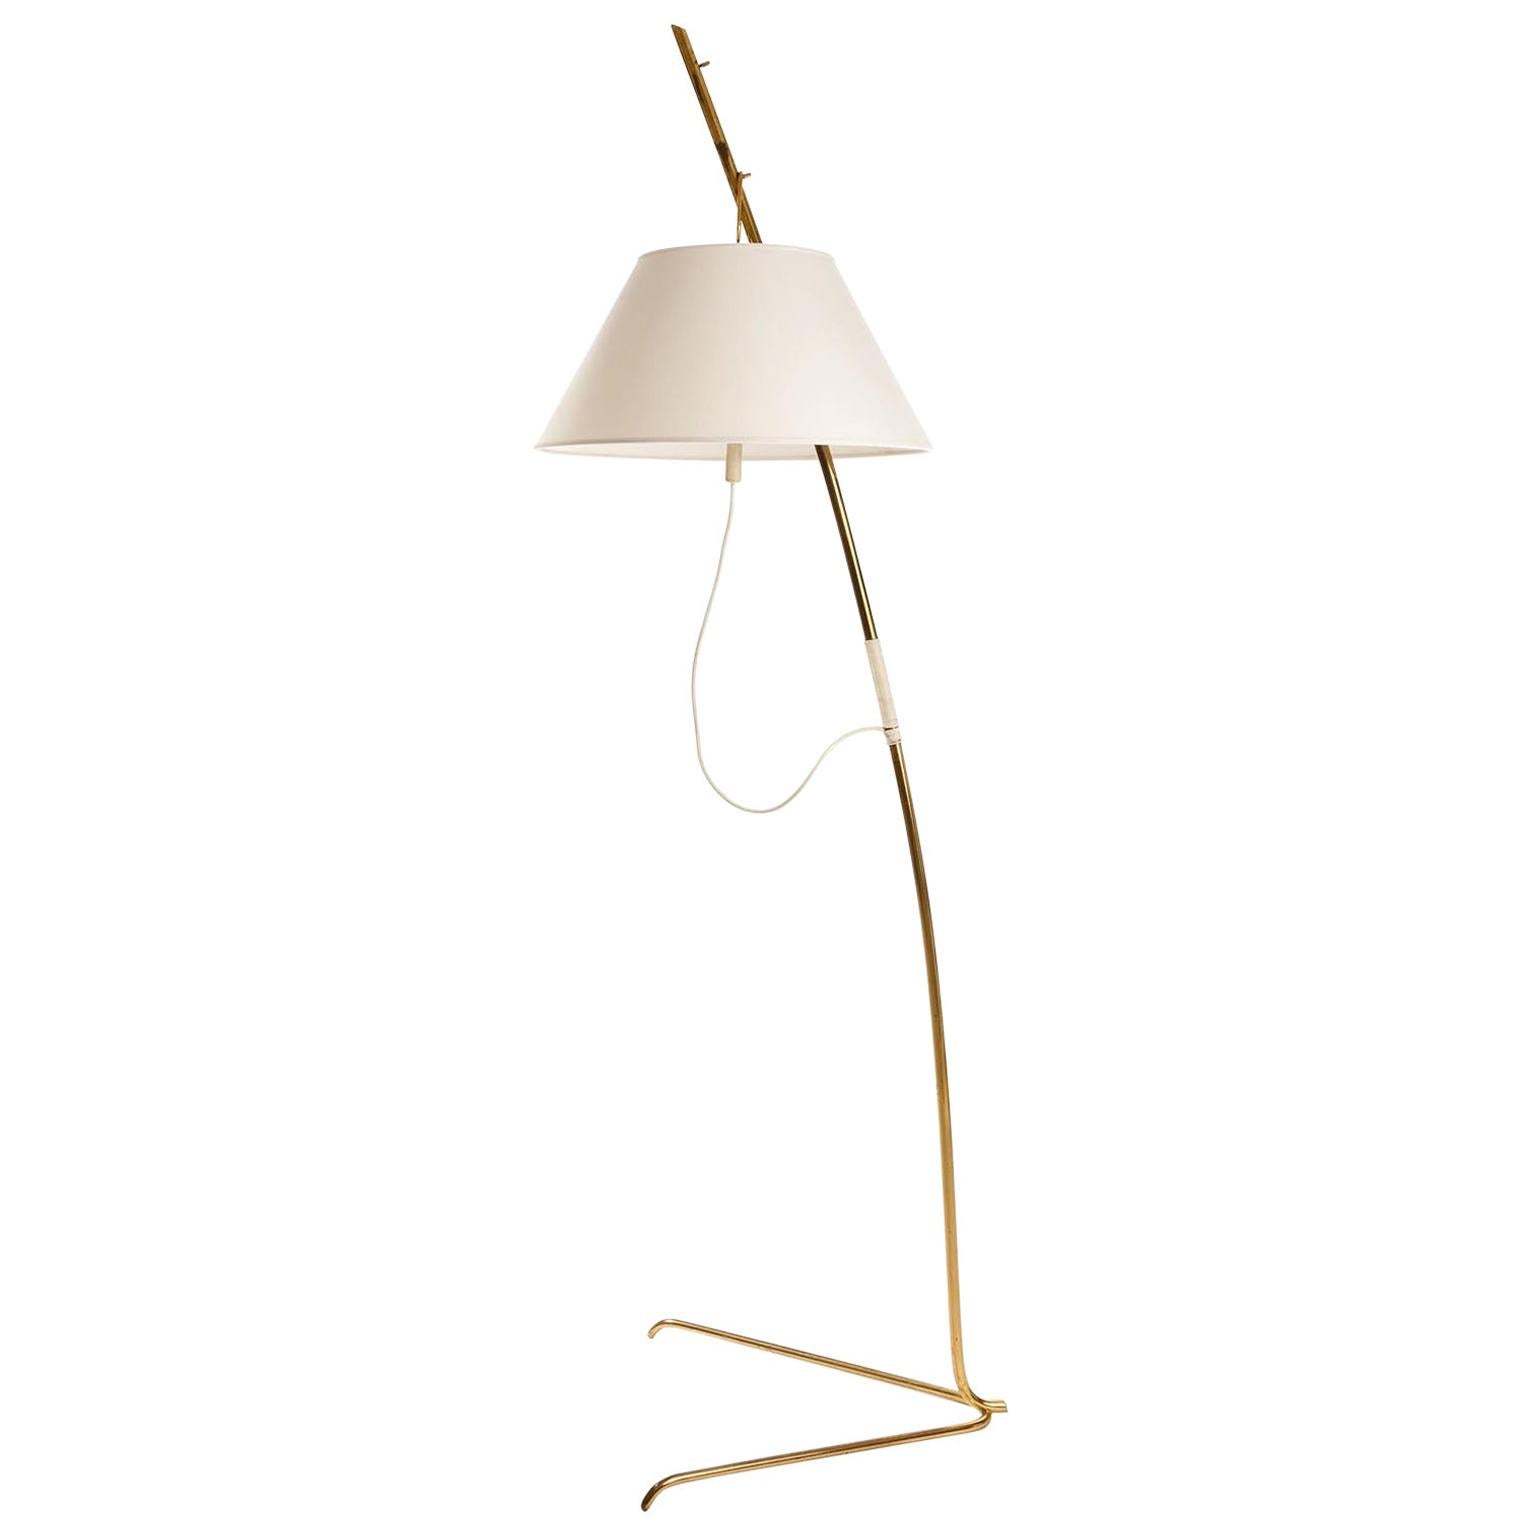 Kalmar Brass Floor Lamp 'Cavador' No. 2098, Height Adjustable, 1960, 1 of 2